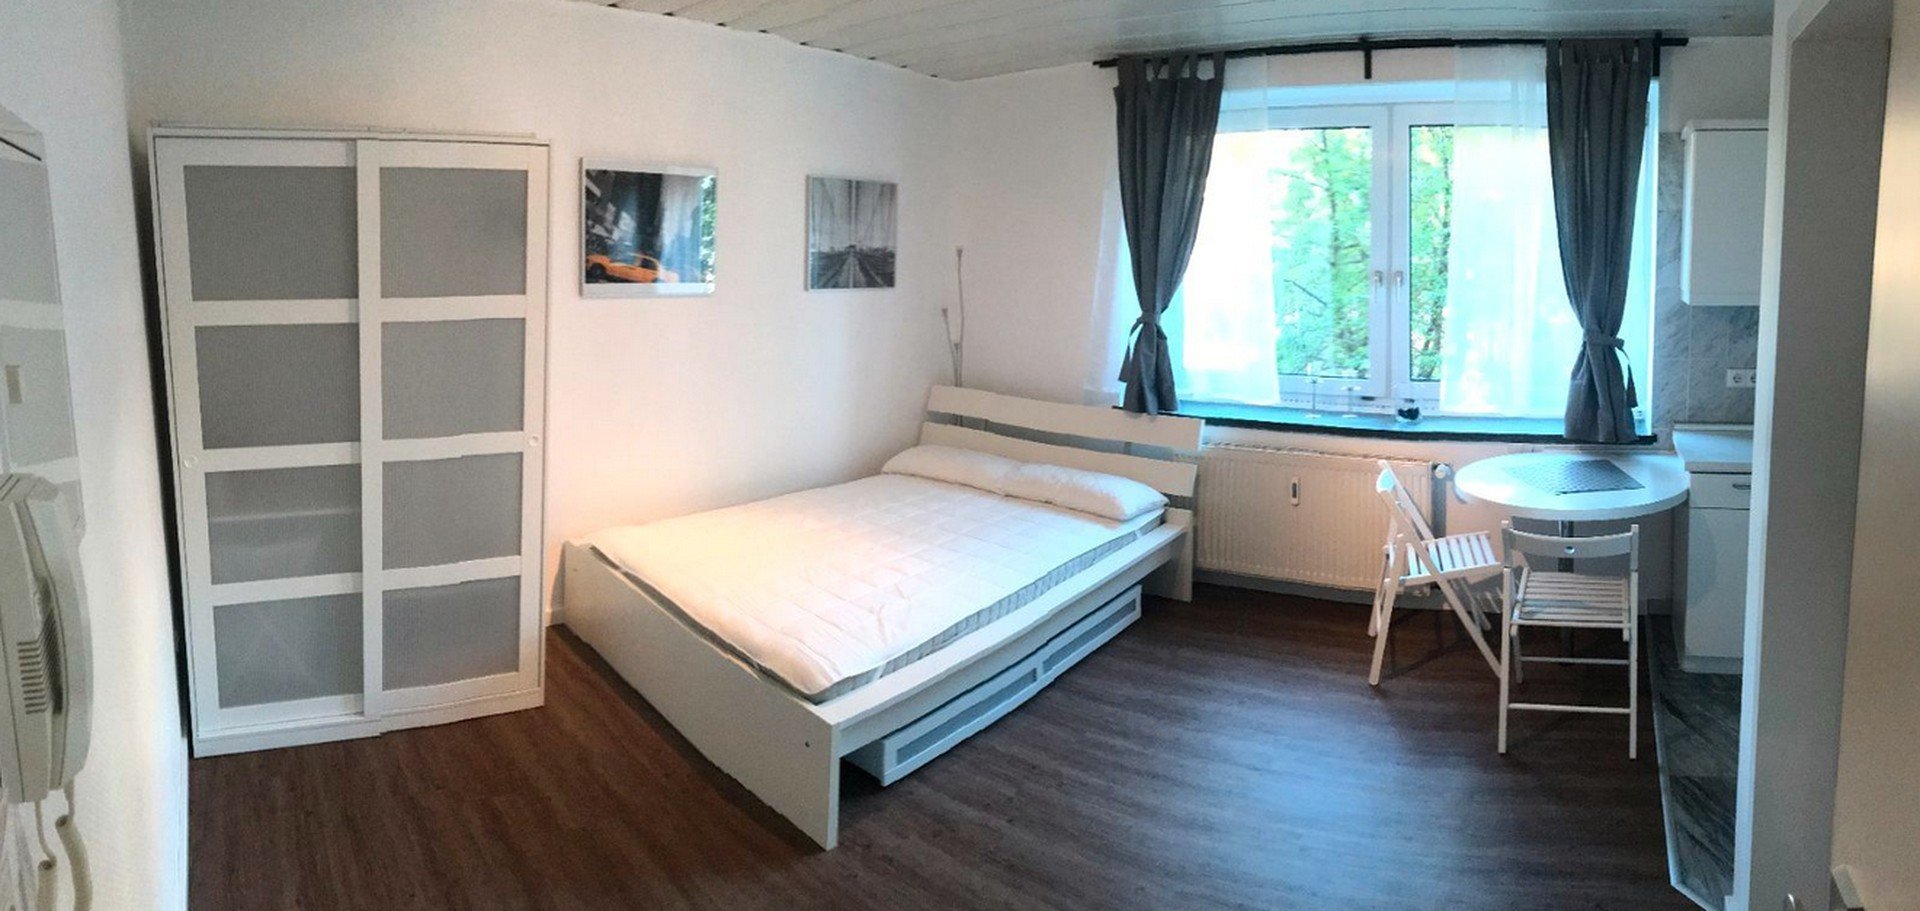 Neuwertige und möblierte Wohnung in Kleefeld (in der Nähe MHH)